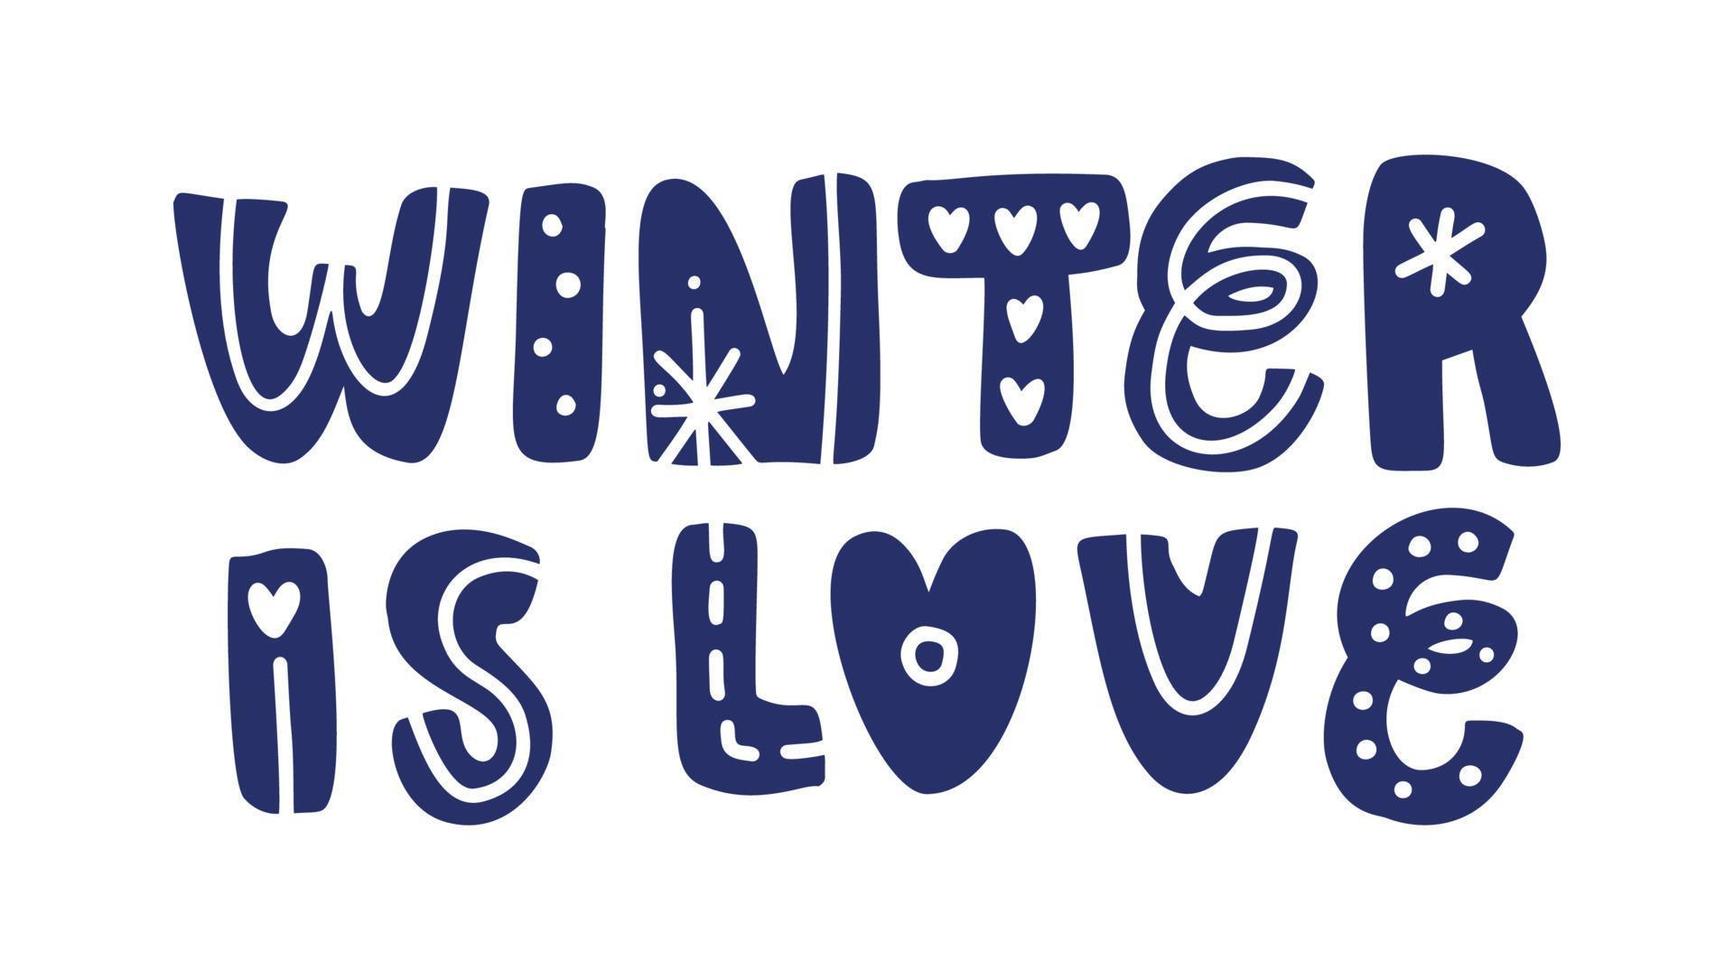 vinter- är kärlek vektor hand text positiv Citat text till jul Semester design, typografi firande affisch, kalligrafi illustration